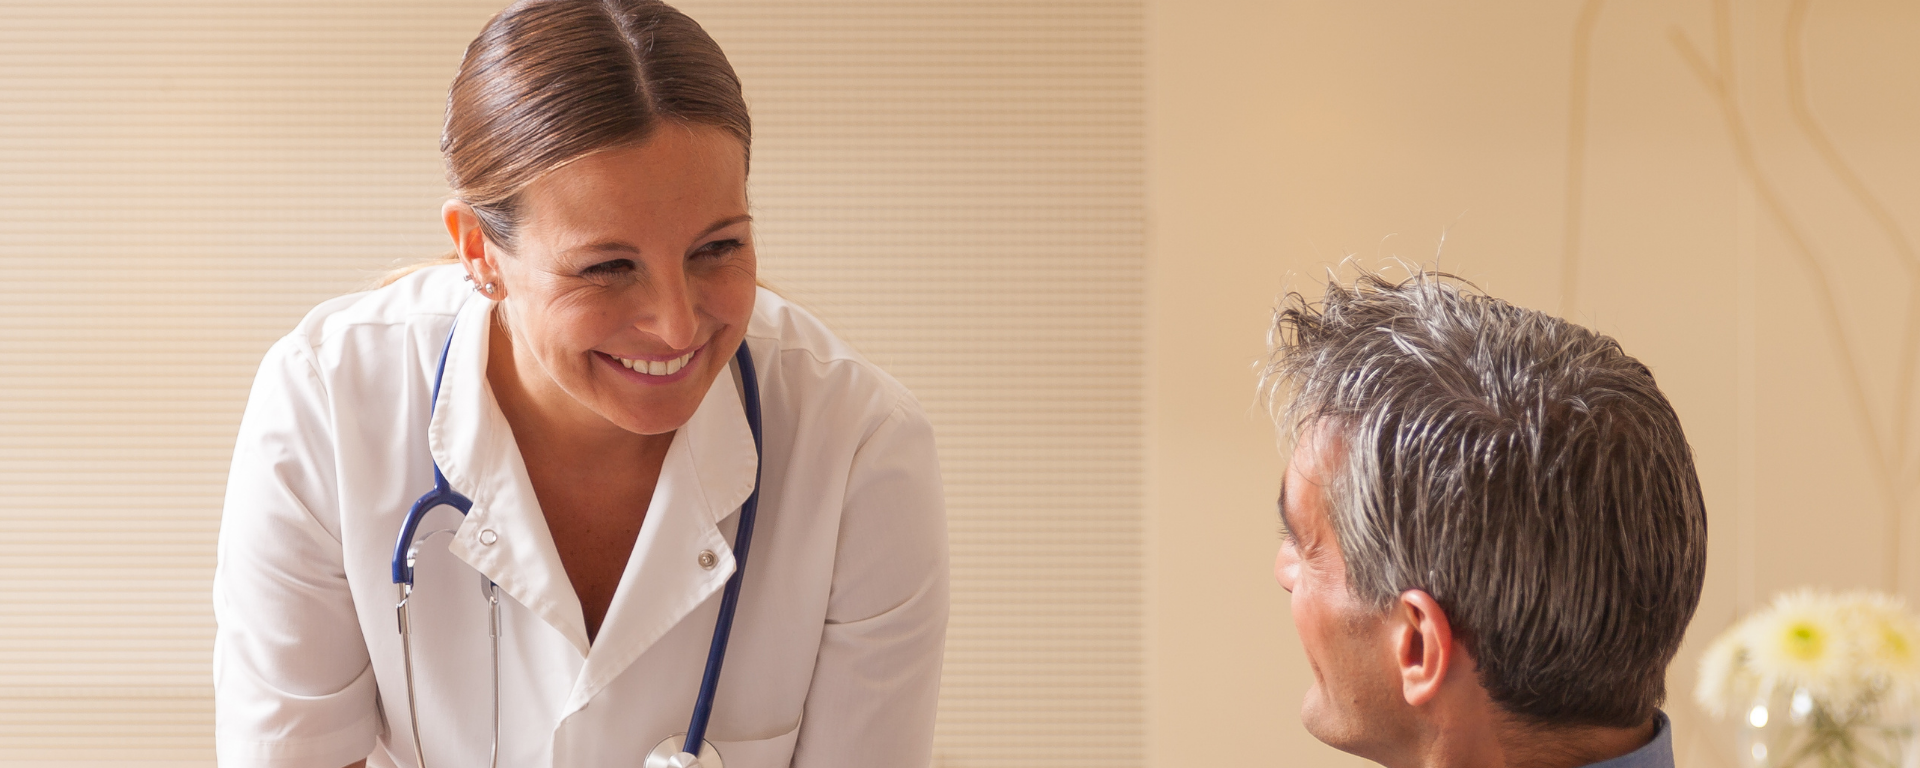 Doctora mira a paciente con una sonrisa